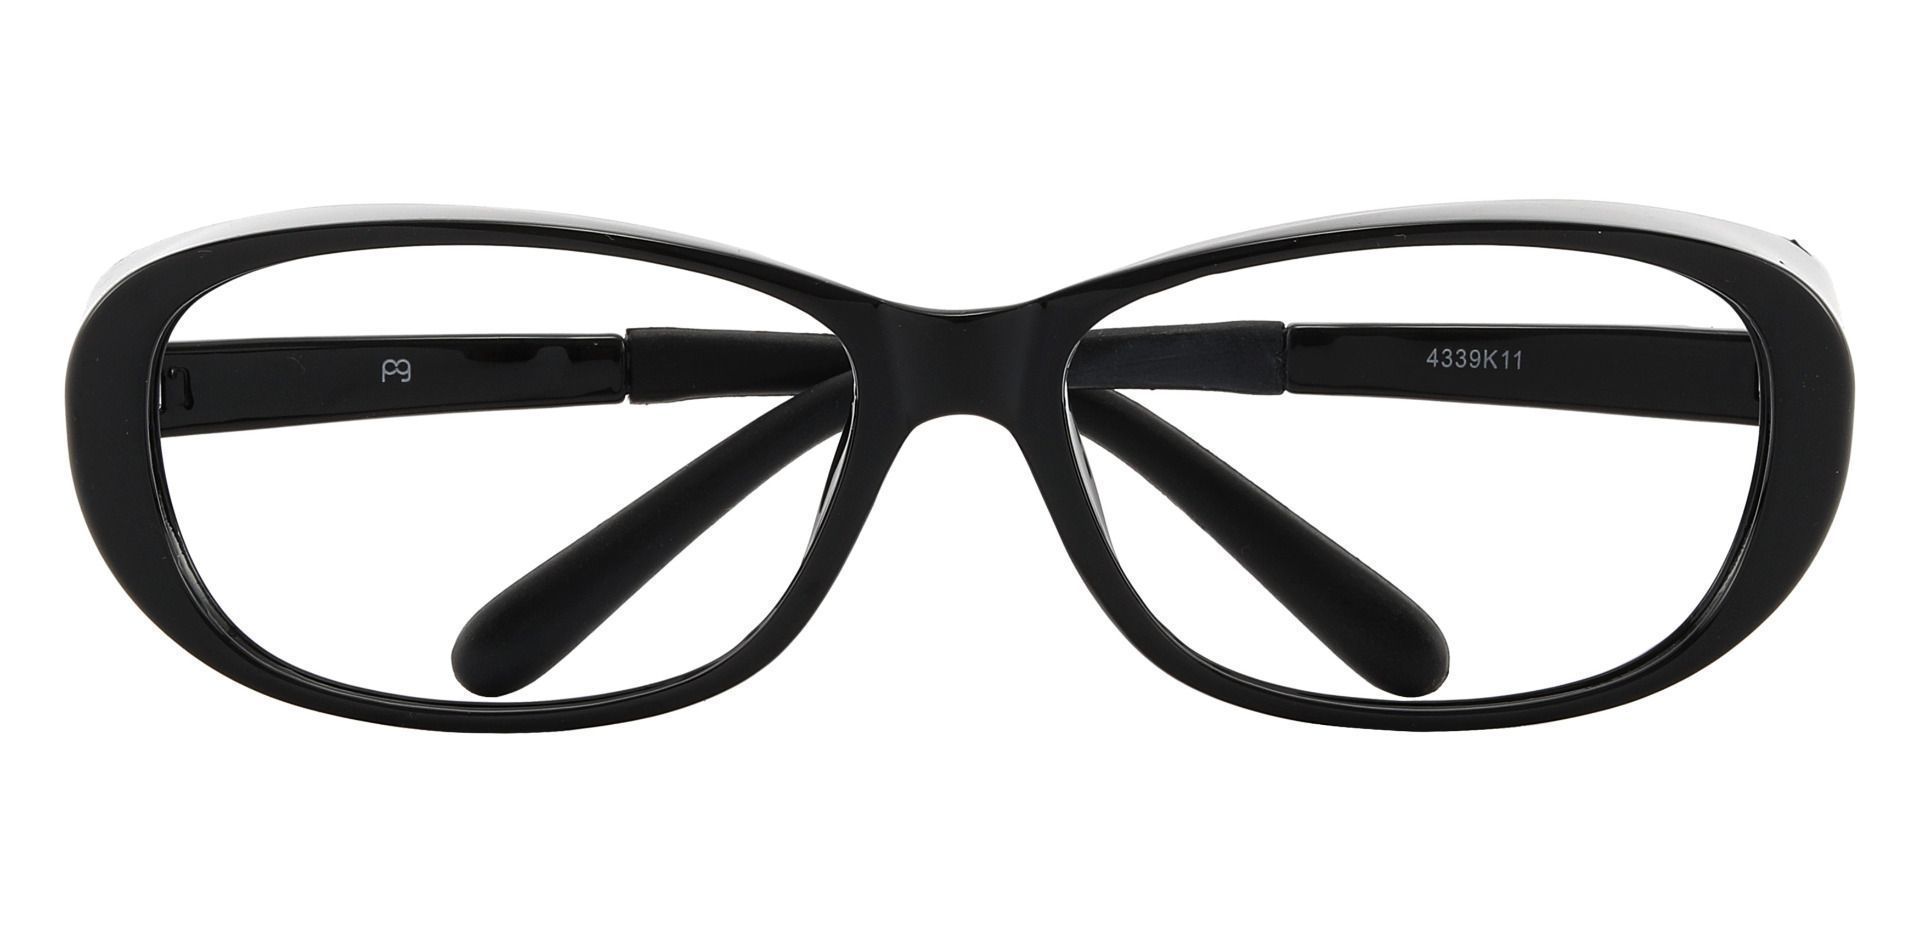 Rosario Sports Goggles Prescription Glasses - Black